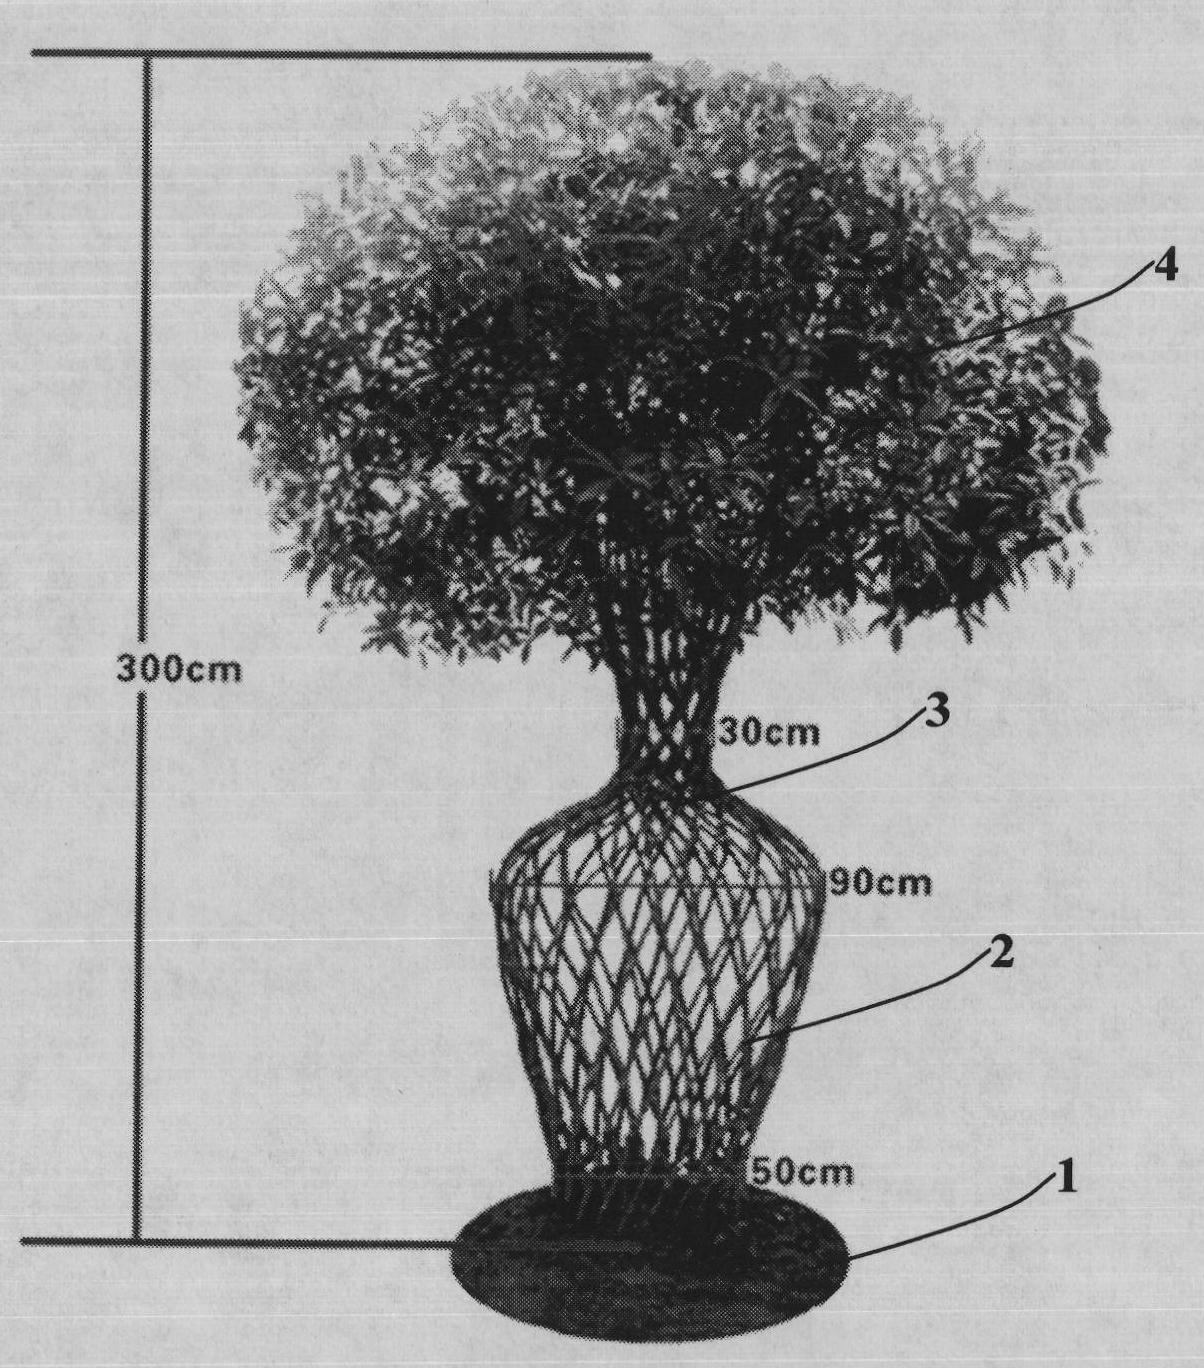 Production method of sweet osmanthus tree vase